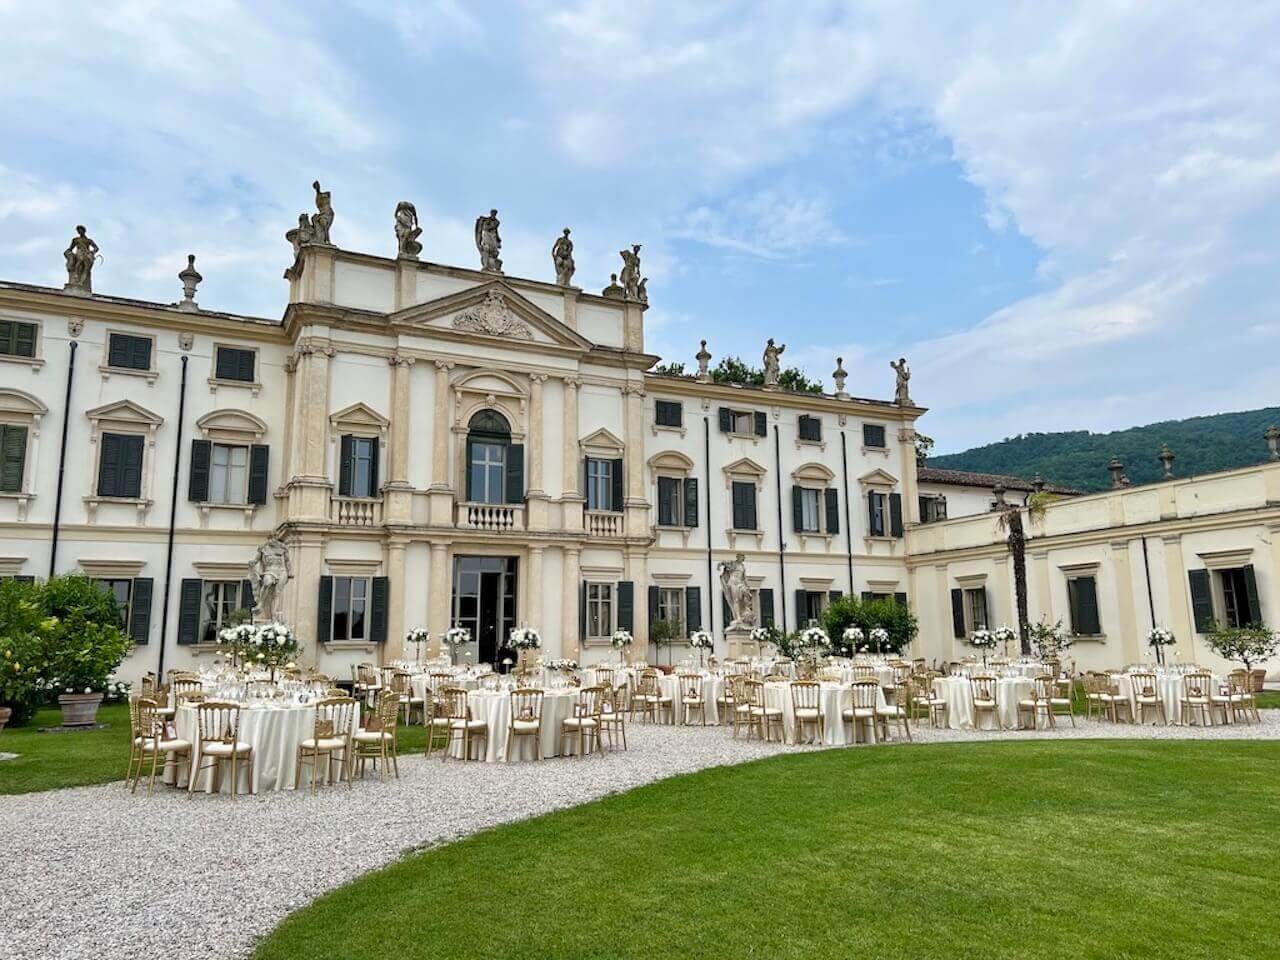 Villa Bertani wedding venue in Verona